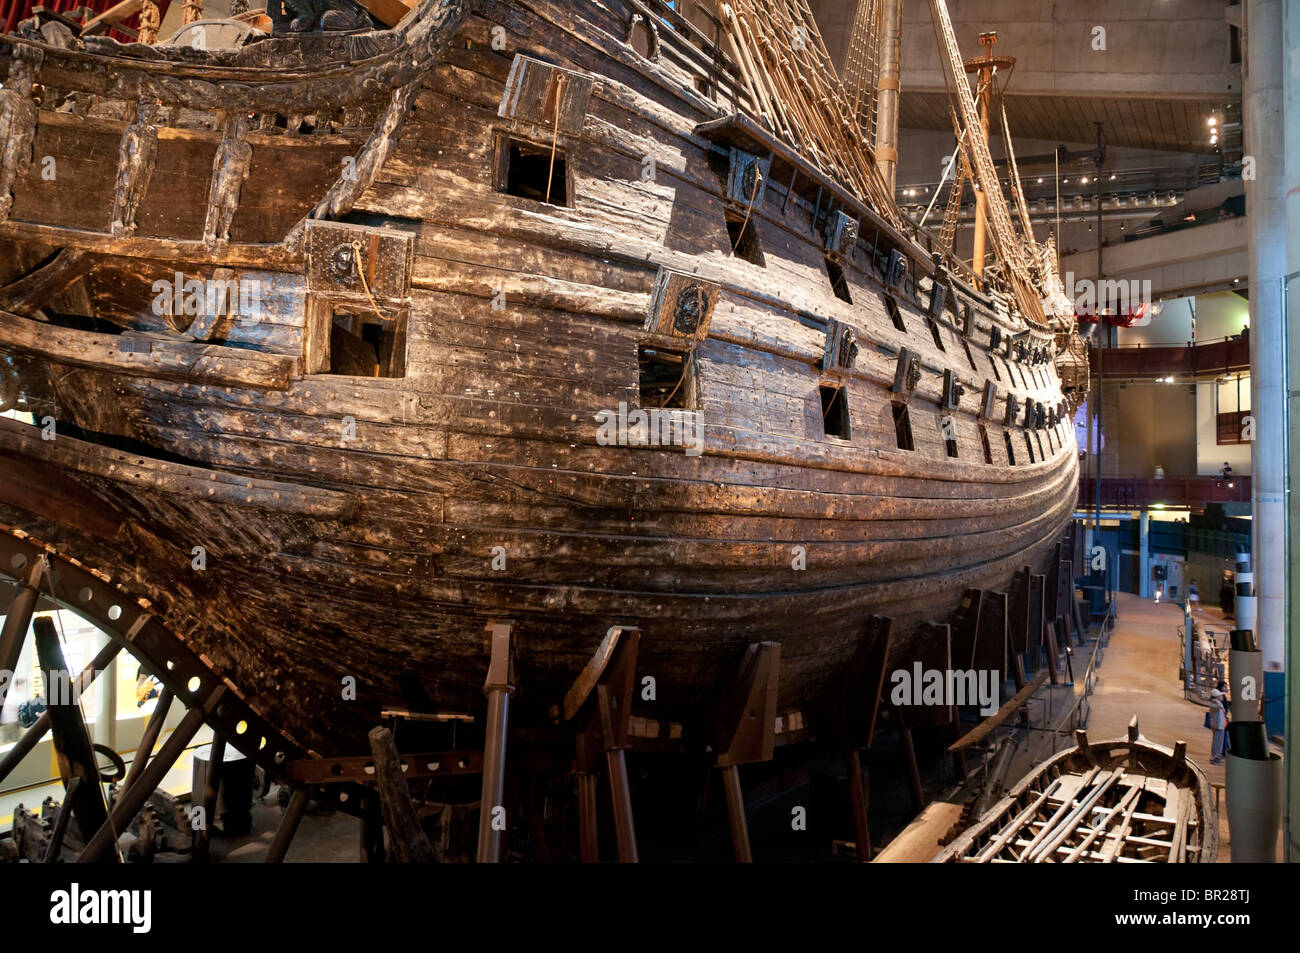 Le navire de guerre suédois Vasa dans le musée Vasa (Vasamuseet) à Stockholm, en Suède. Banque D'Images